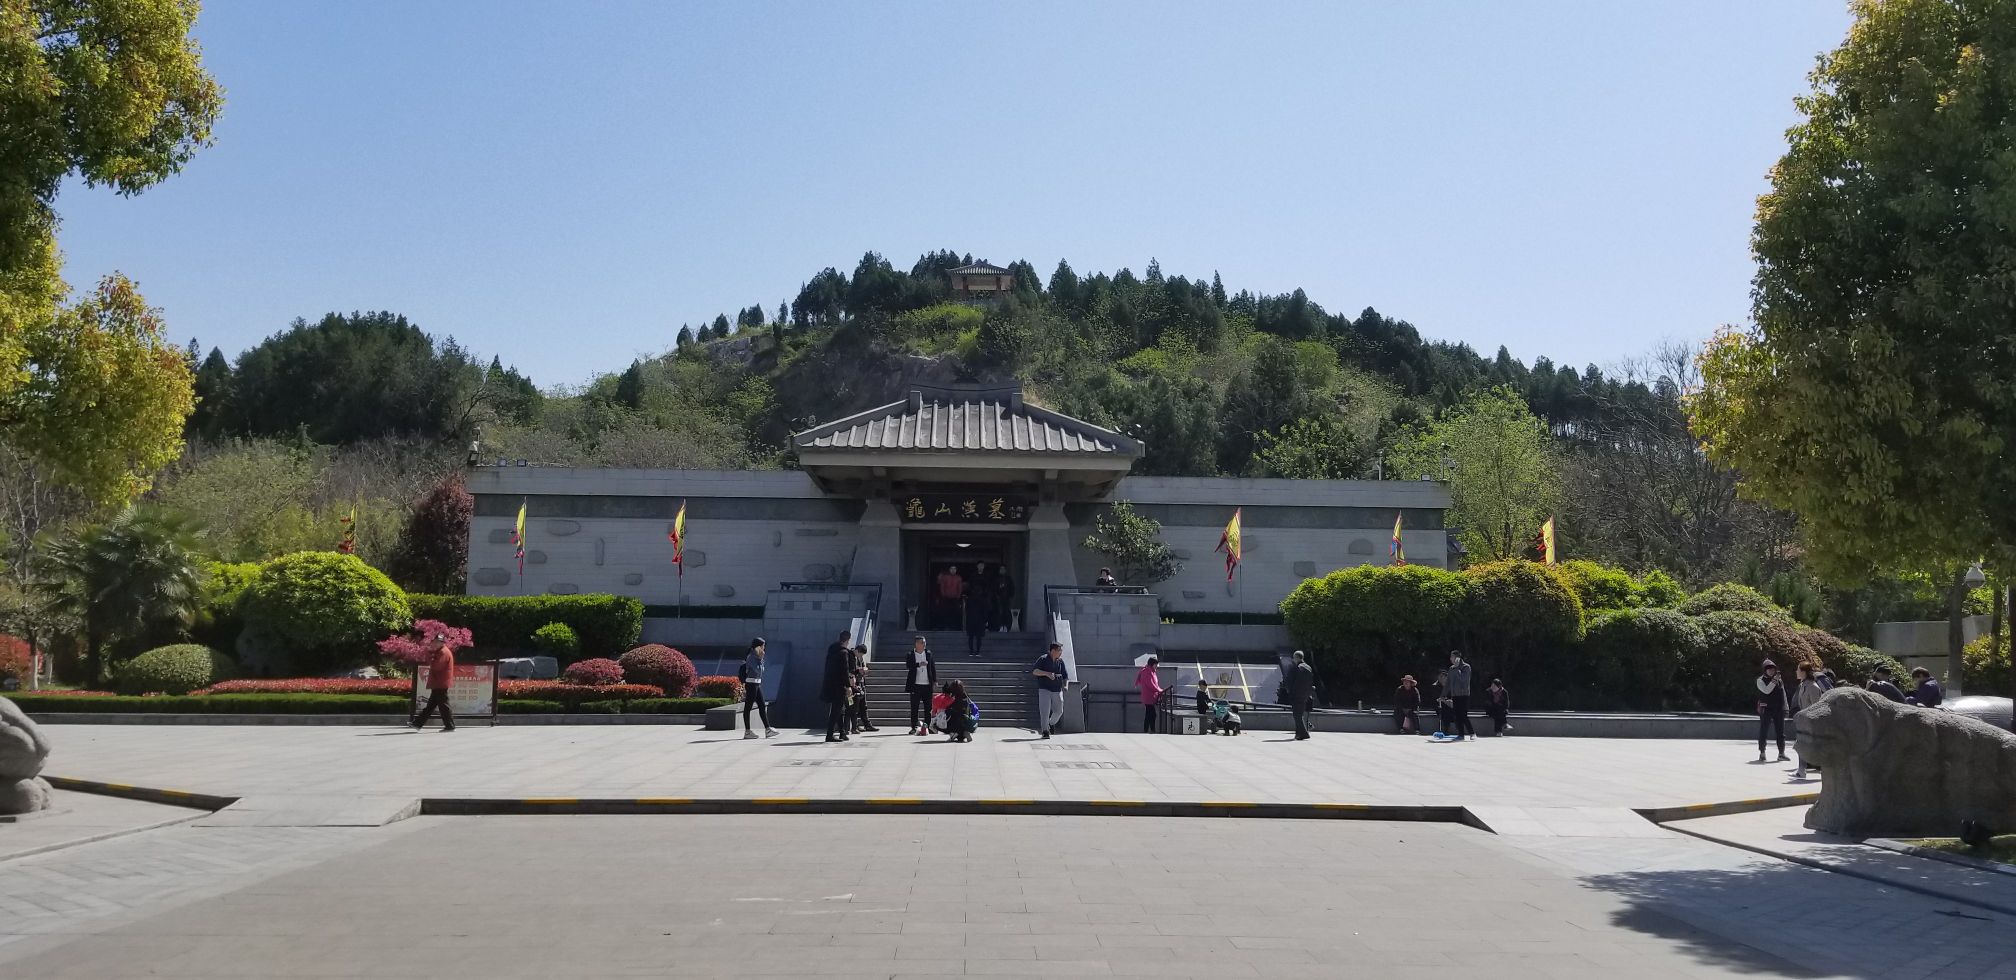 【携程攻略】徐州龟山汉墓景点,汉墓值得去看看,旁边的圣旨博物馆没啥